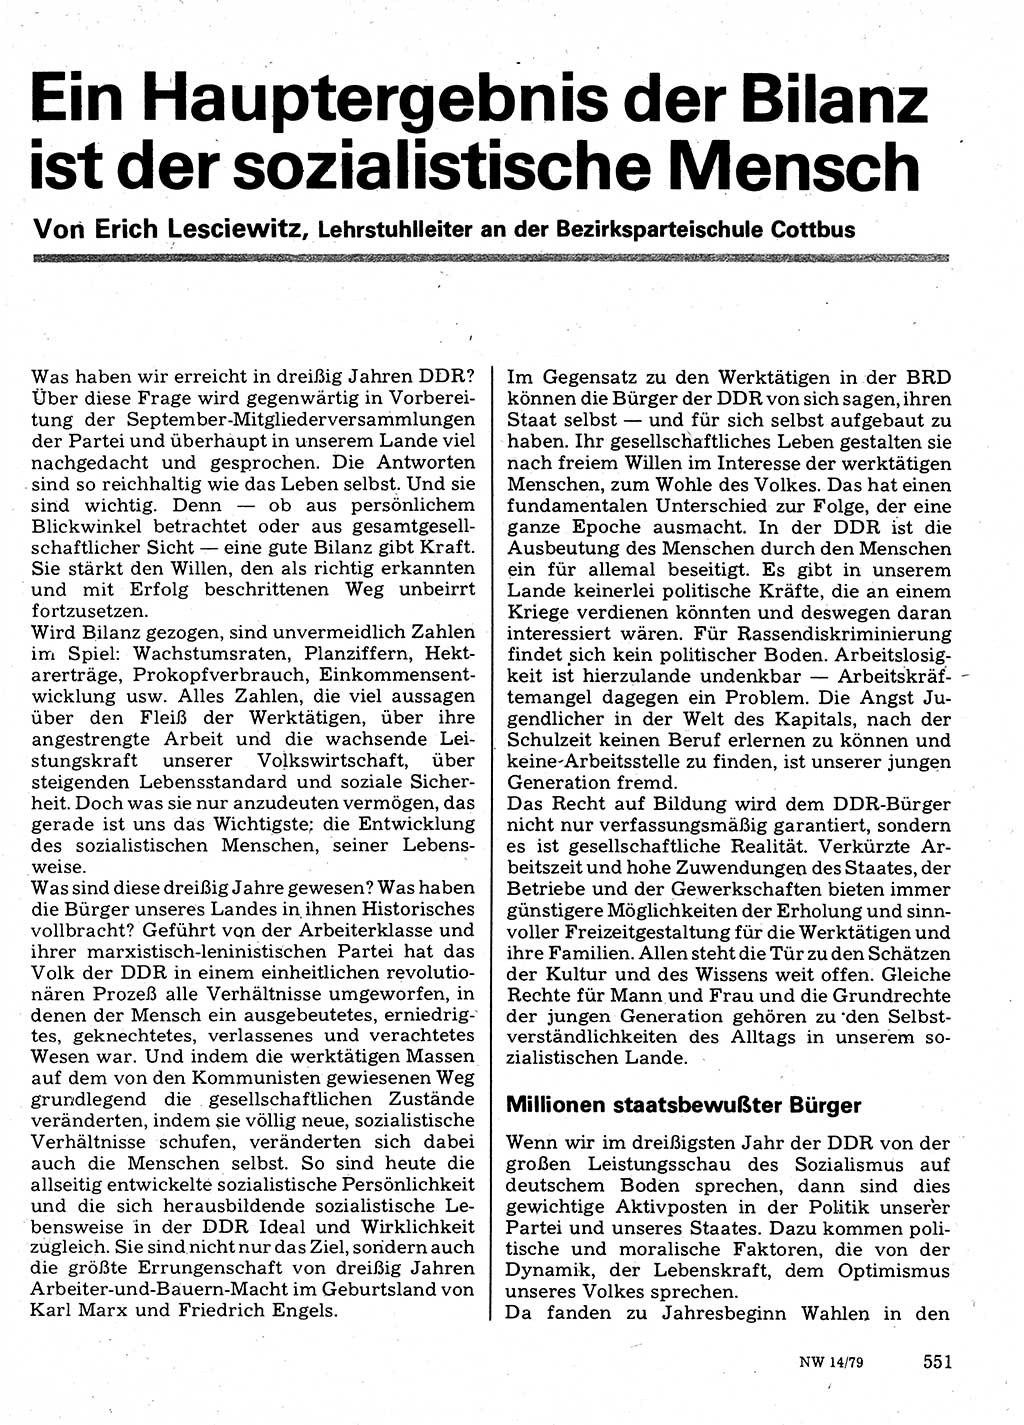 Neuer Weg (NW), Organ des Zentralkomitees (ZK) der SED (Sozialistische Einheitspartei Deutschlands) für Fragen des Parteilebens, 34. Jahrgang [Deutsche Demokratische Republik (DDR)] 1979, Seite 551 (NW ZK SED DDR 1979, S. 551)